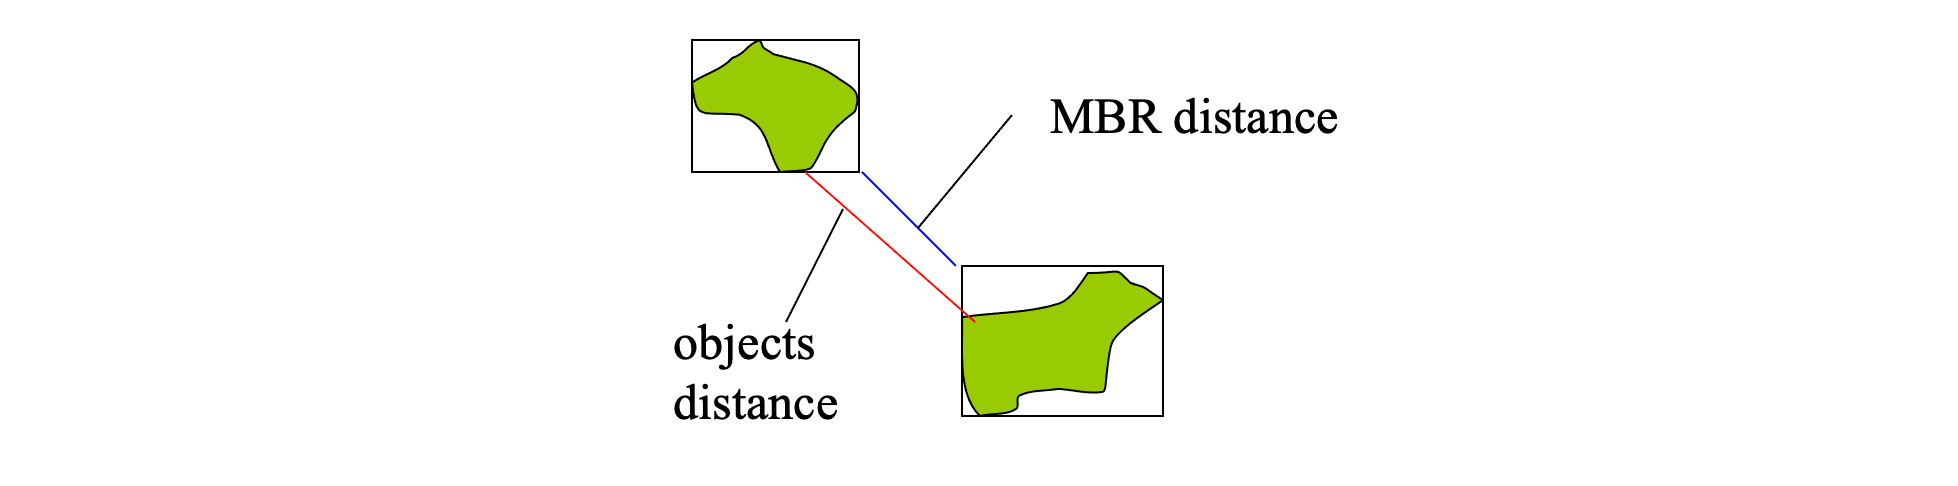 distance_mbr